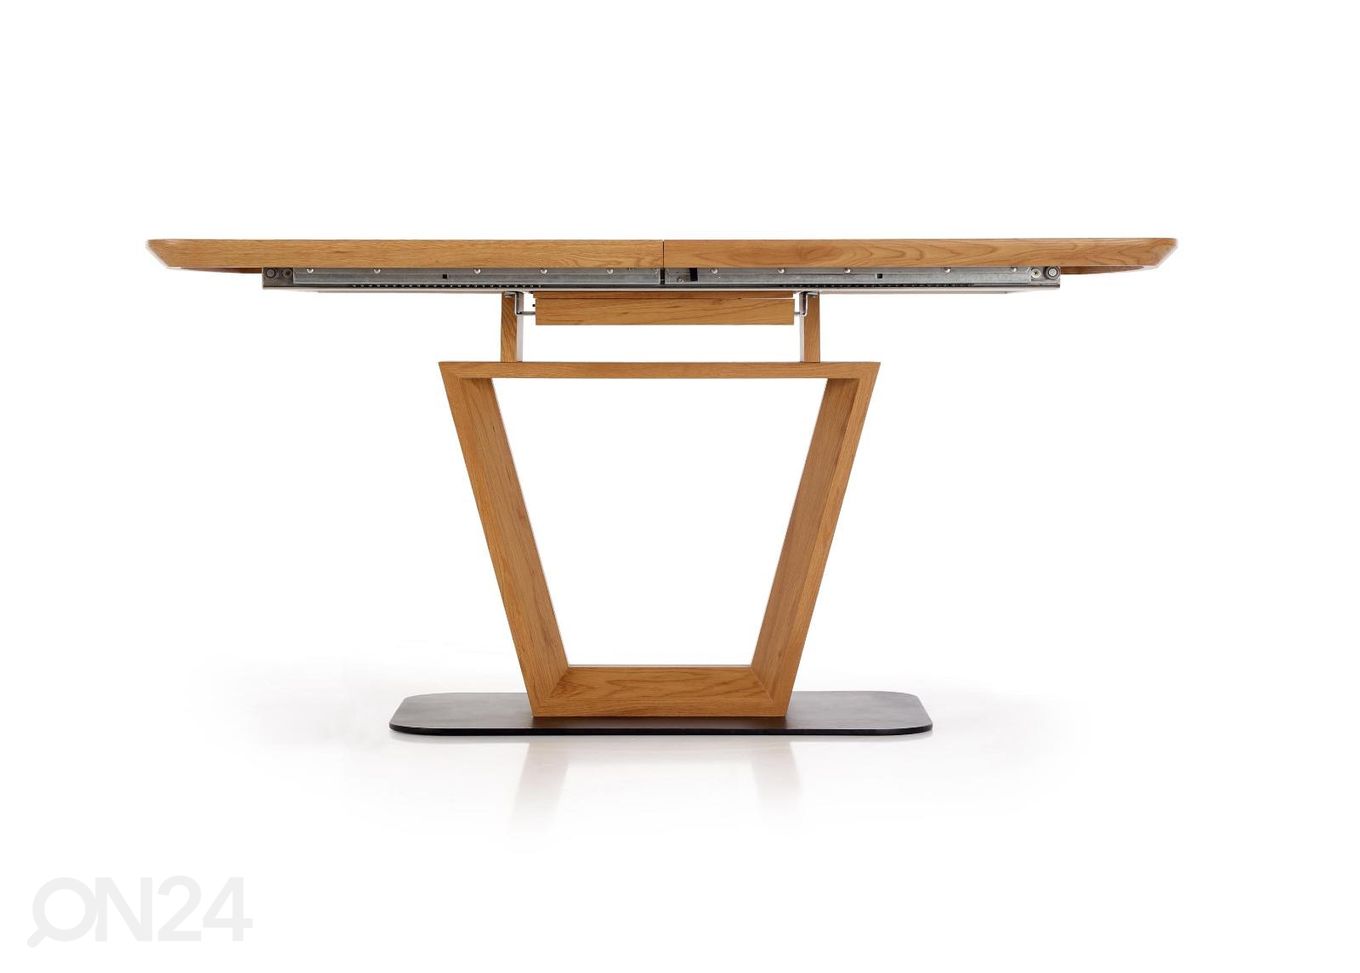 Удлиняющийся обеденный стол 160-220x90 cm увеличить